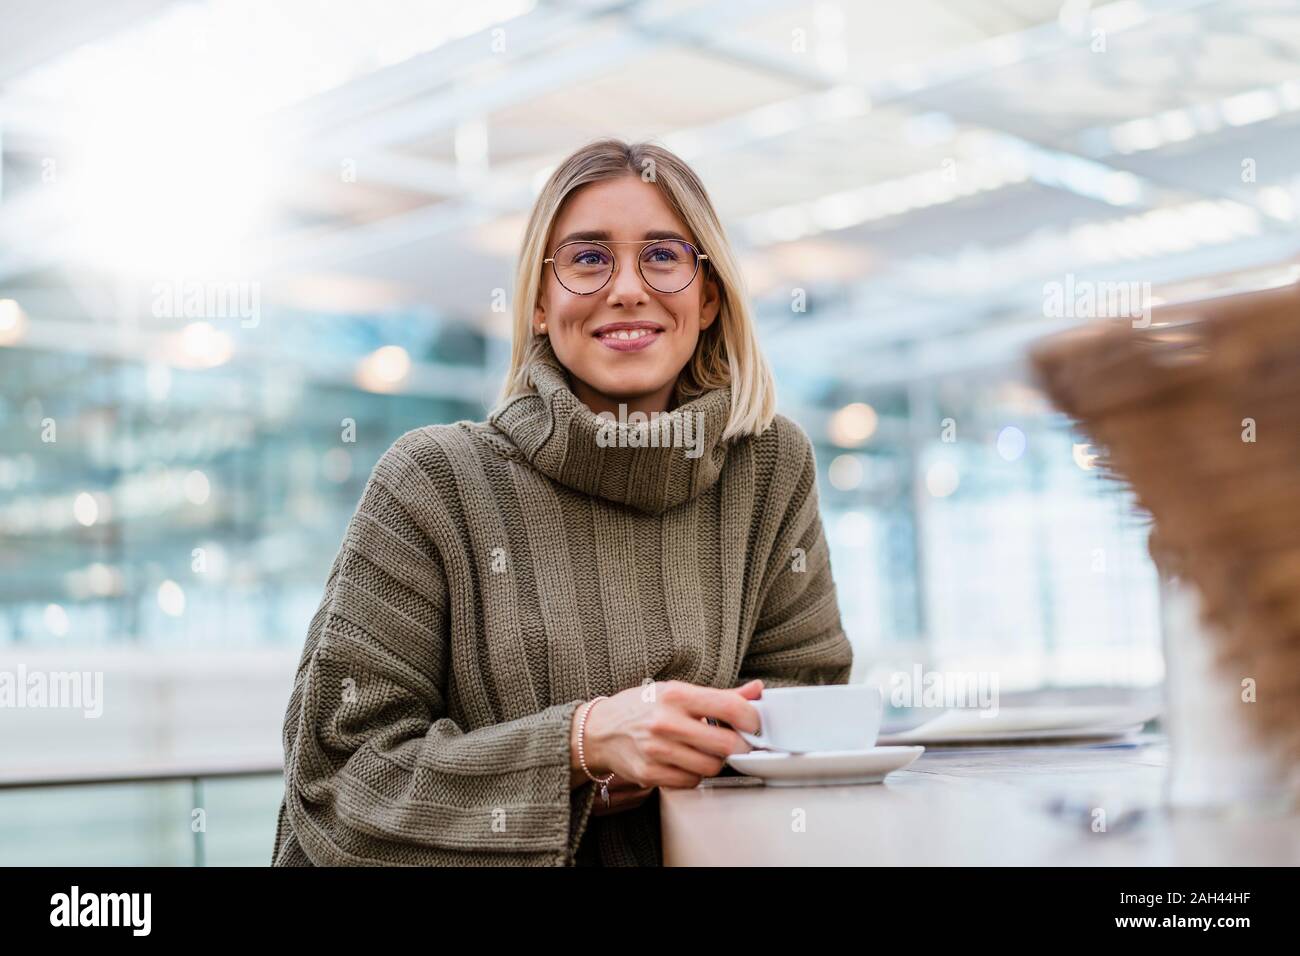 Retrato de una mujer sonriente en un café Foto de stock